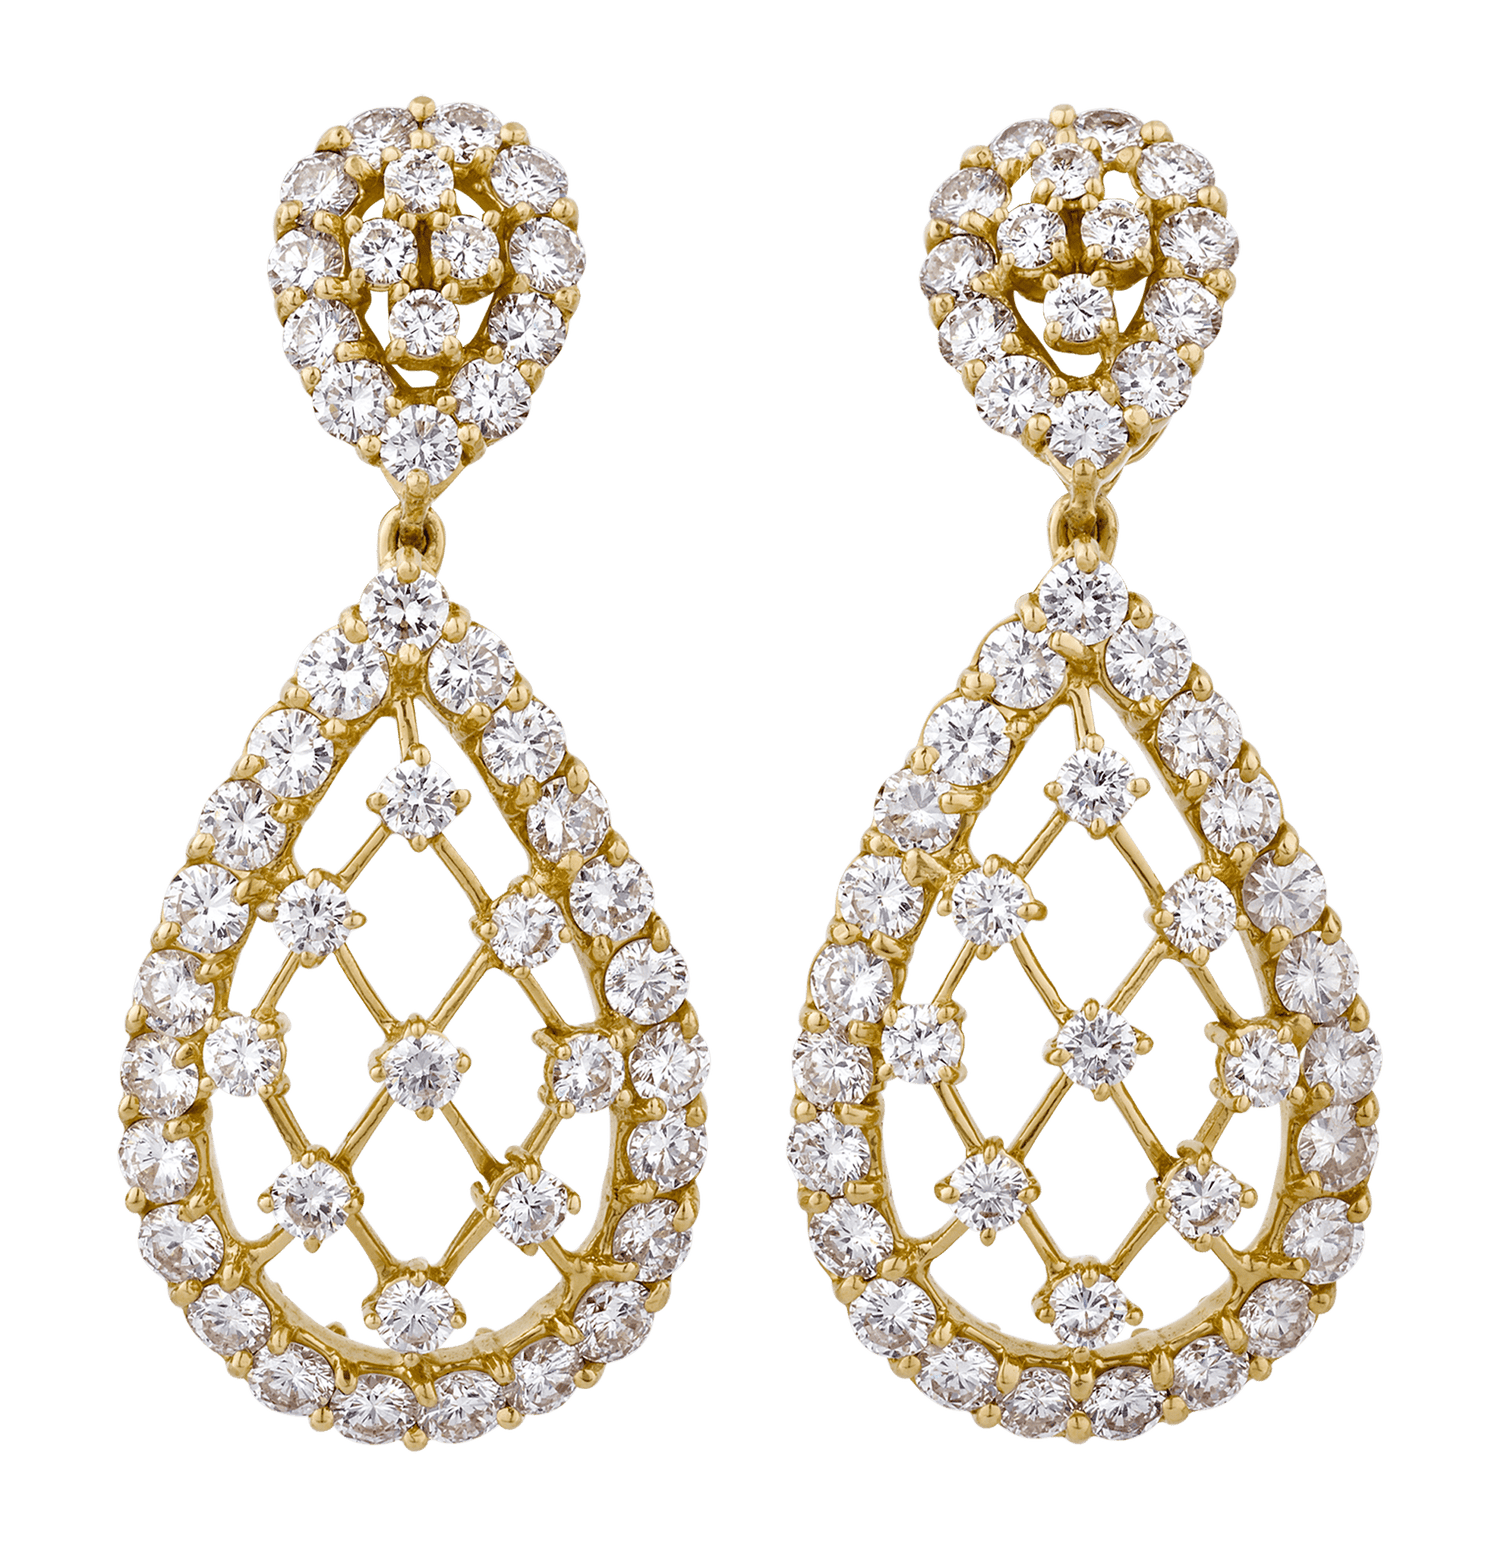 Diamond Net Earrings, 6.25 Carats